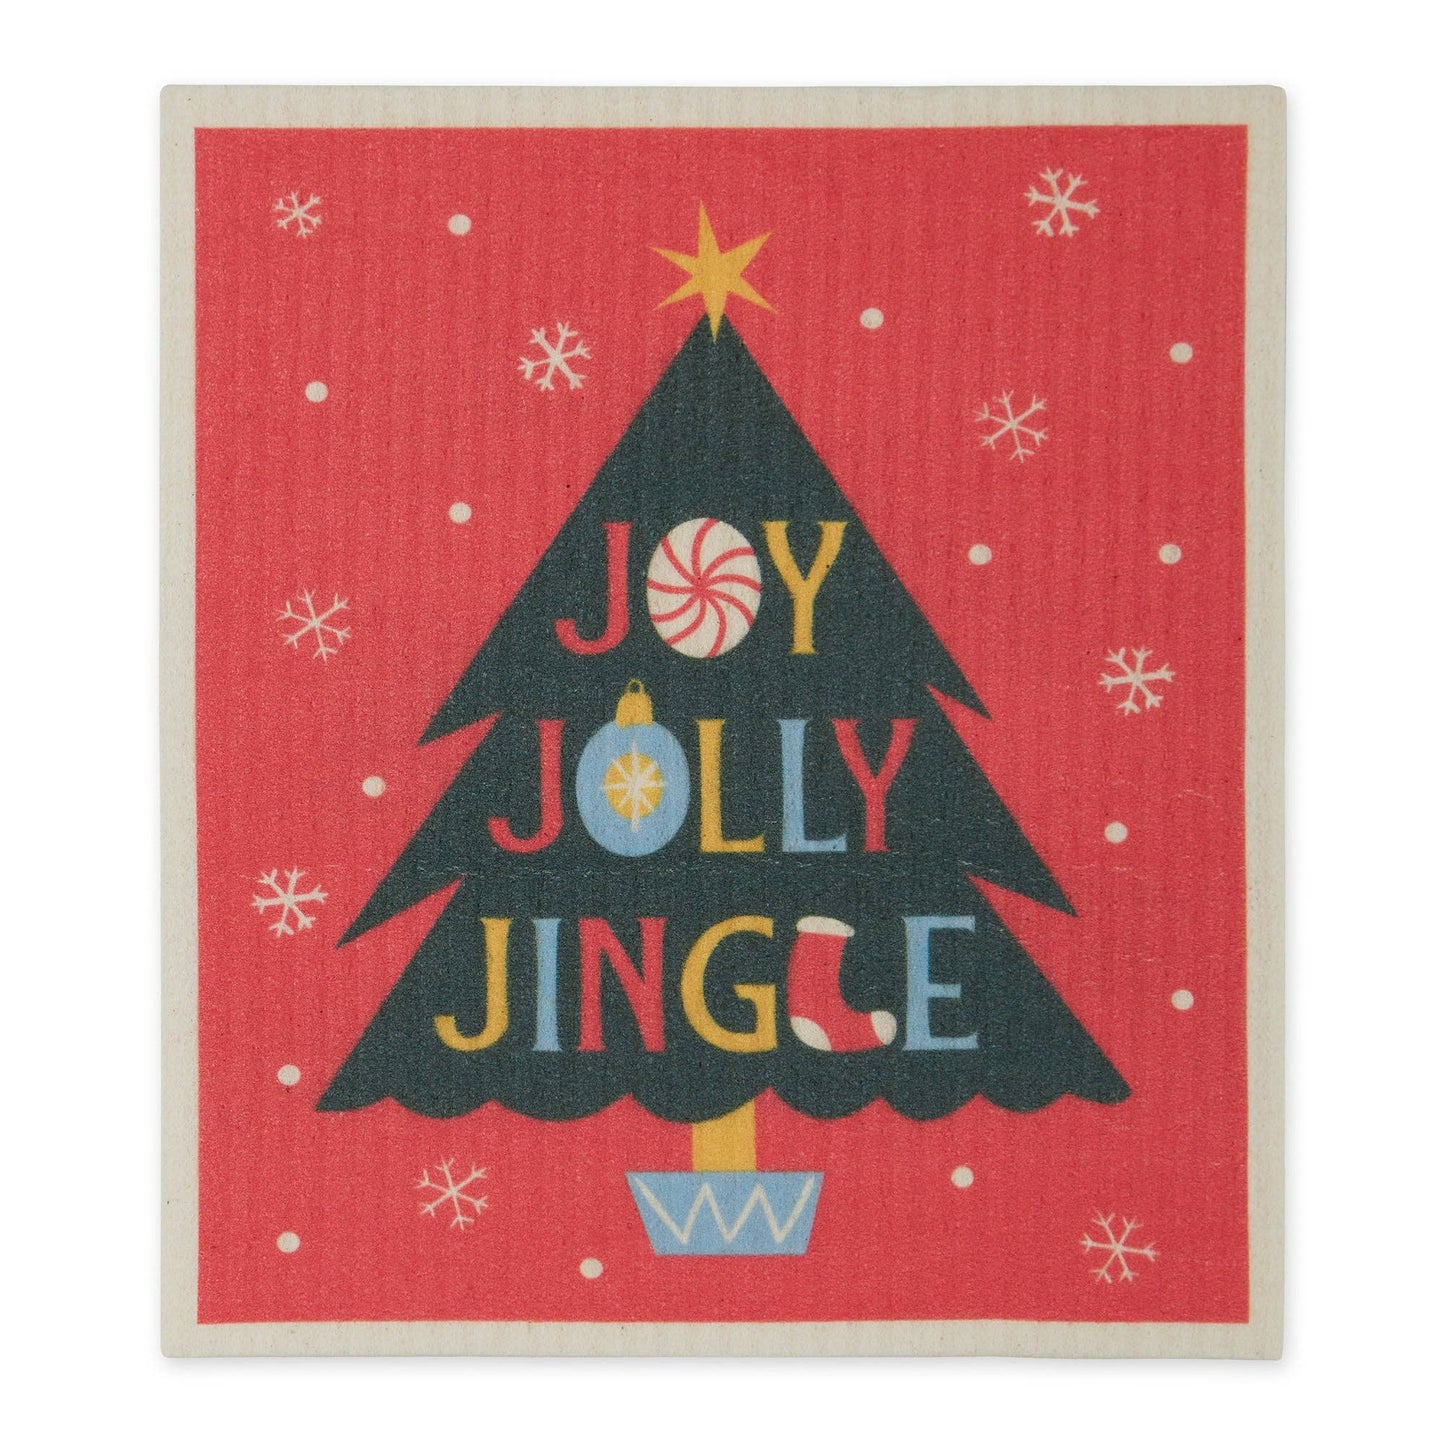 Joy Jolly Jingle Swedish Dishcloth